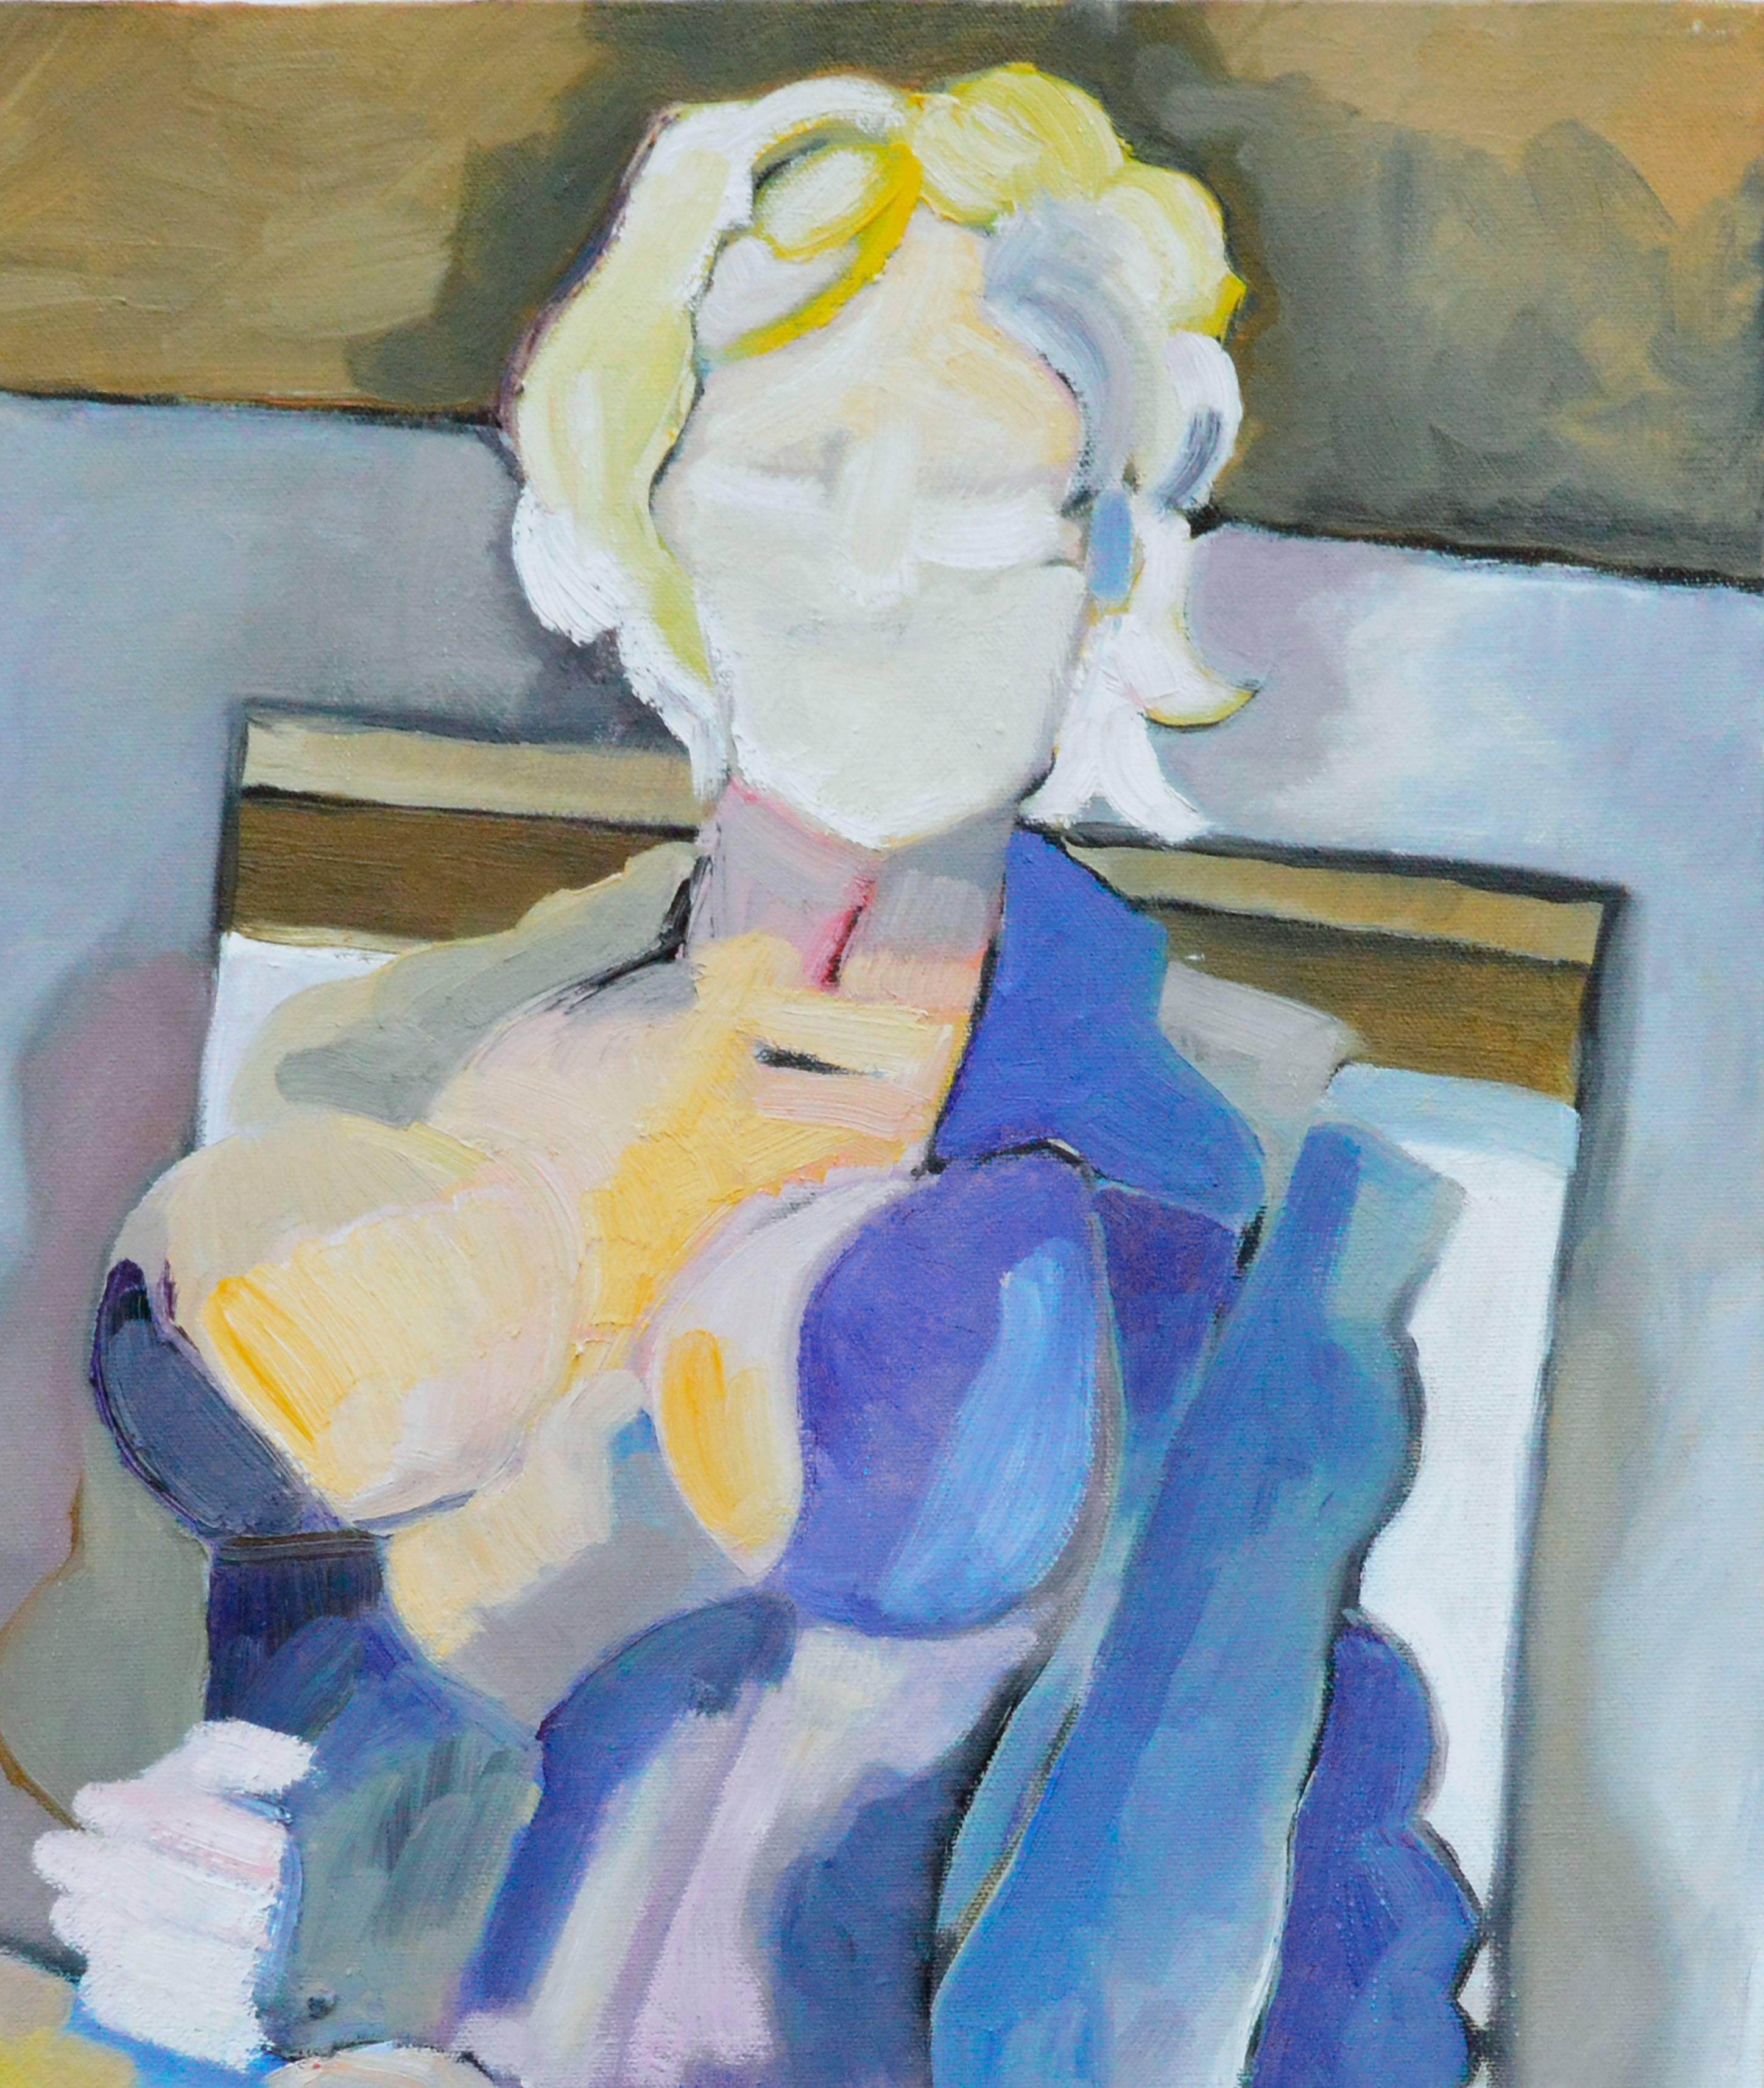 Regenbogen-Frau, zeitgenössische mehrfarbige figurale abstrakte Figur – Painting von Michael William Eggleston